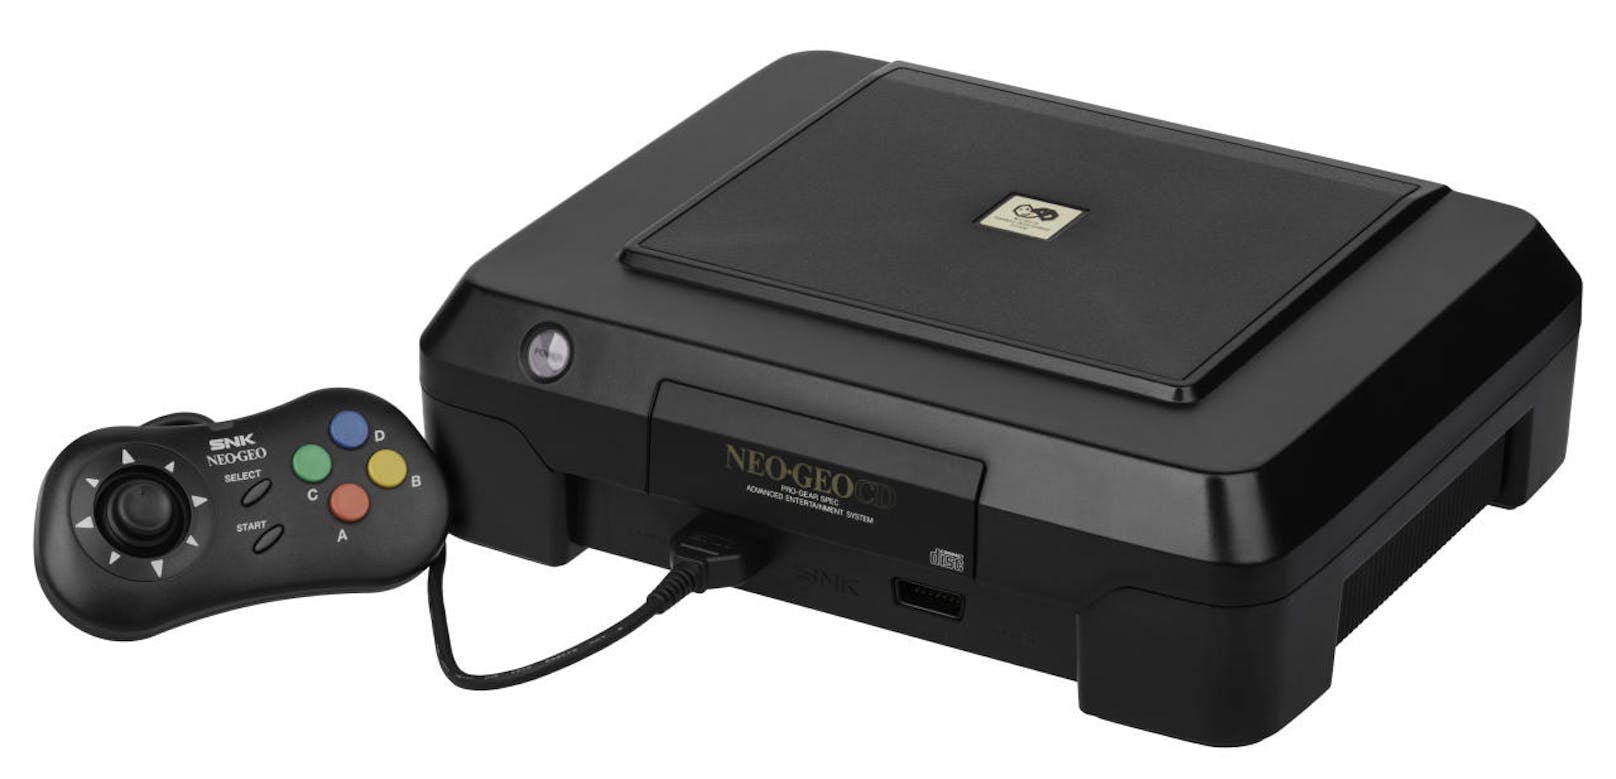 Das vergleichsweise teure Neo Geo war zunächst als Verleihkonsole konzipiert, viele Kunden kauften sich die Konsole aber fürs Wochnzimmer. Das Neo Geo CD trug 1994 diesem Trend Rechnung und machte die technisch leistungsstarke Konsole auch für den Durchschnittsbürger erschwinglich.